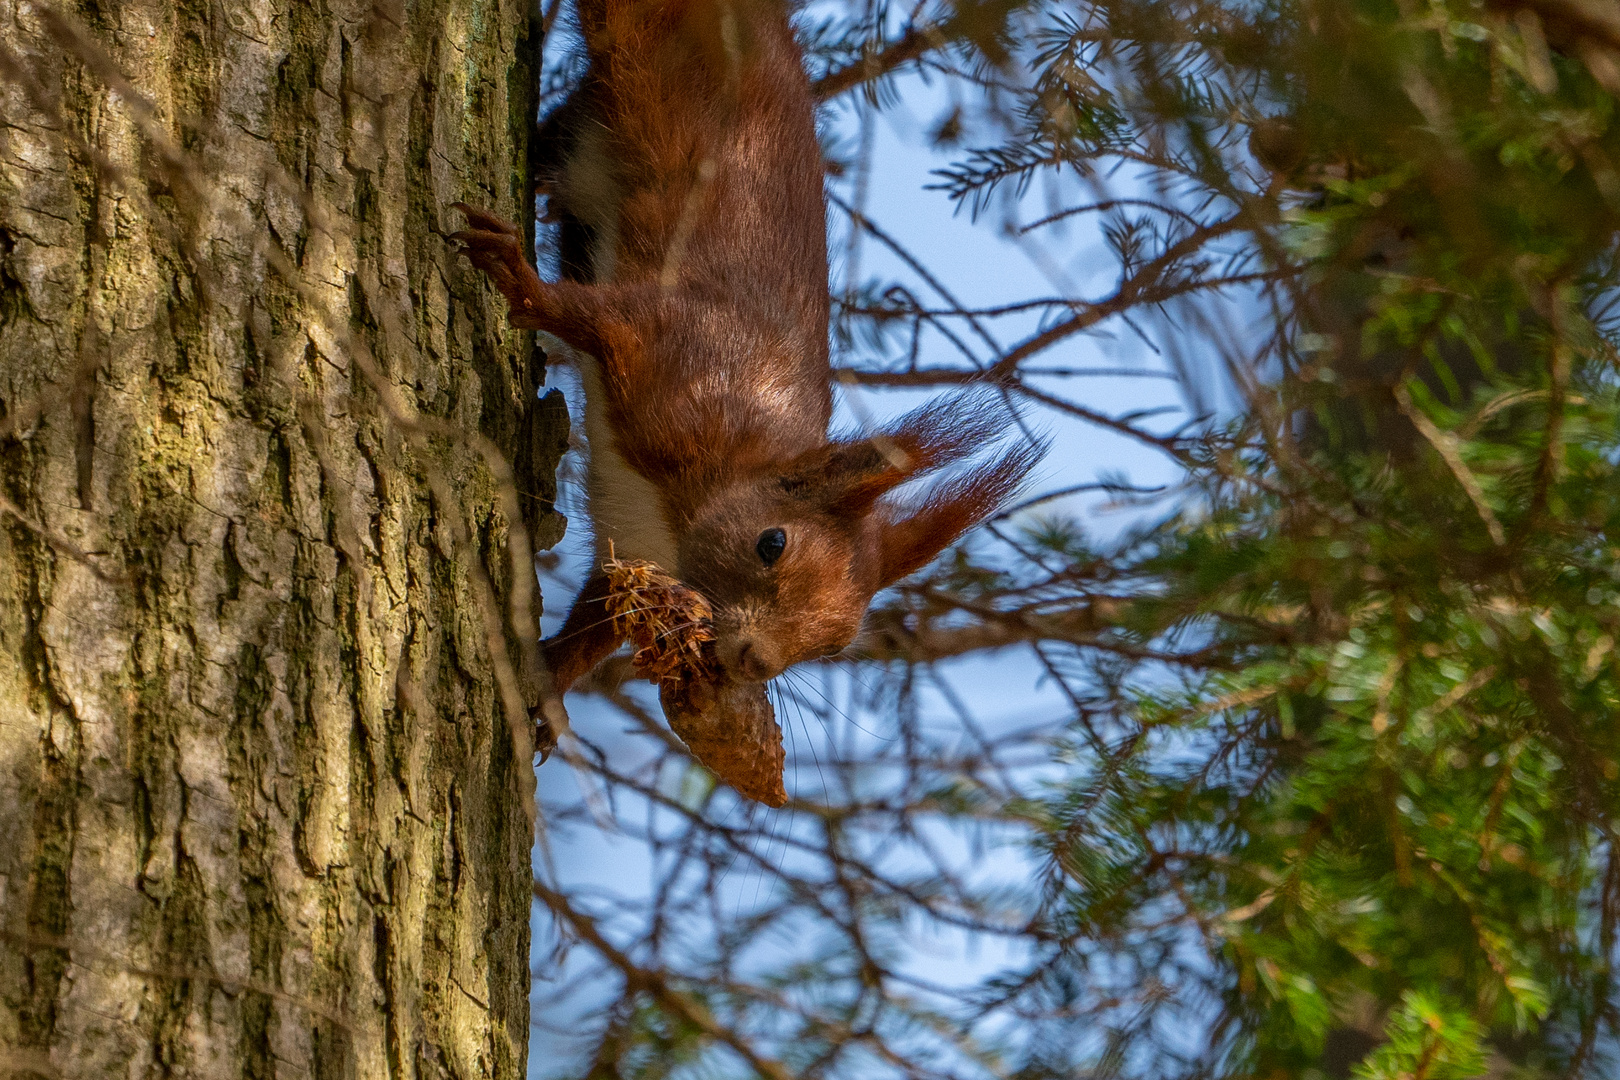 Eichhörnchen wie immer auf Nahrungssuche. :-))